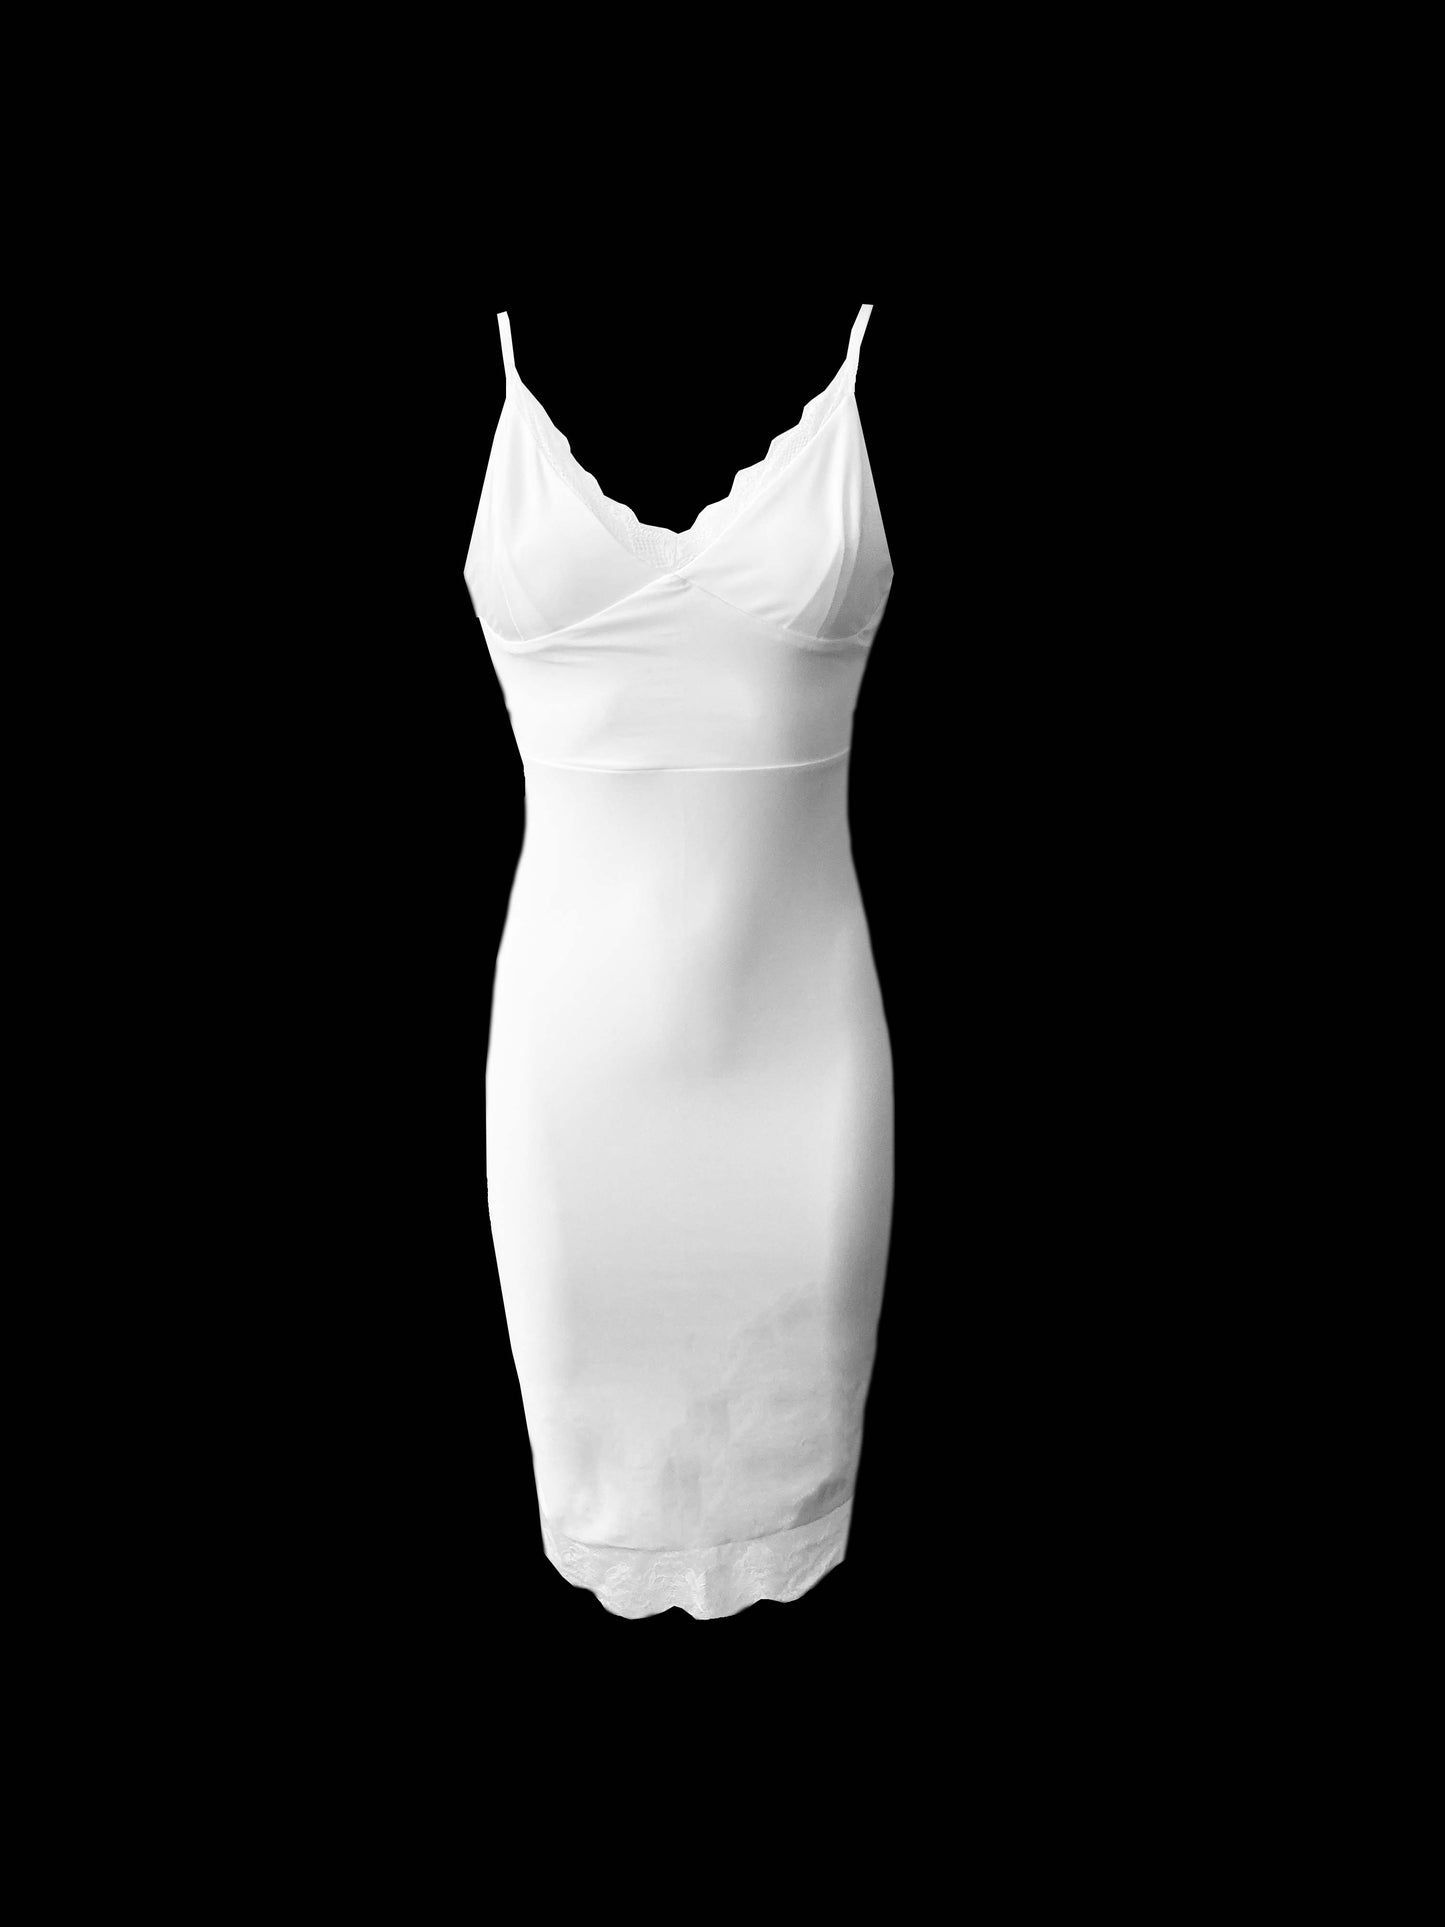 The Lingerie Dress in White